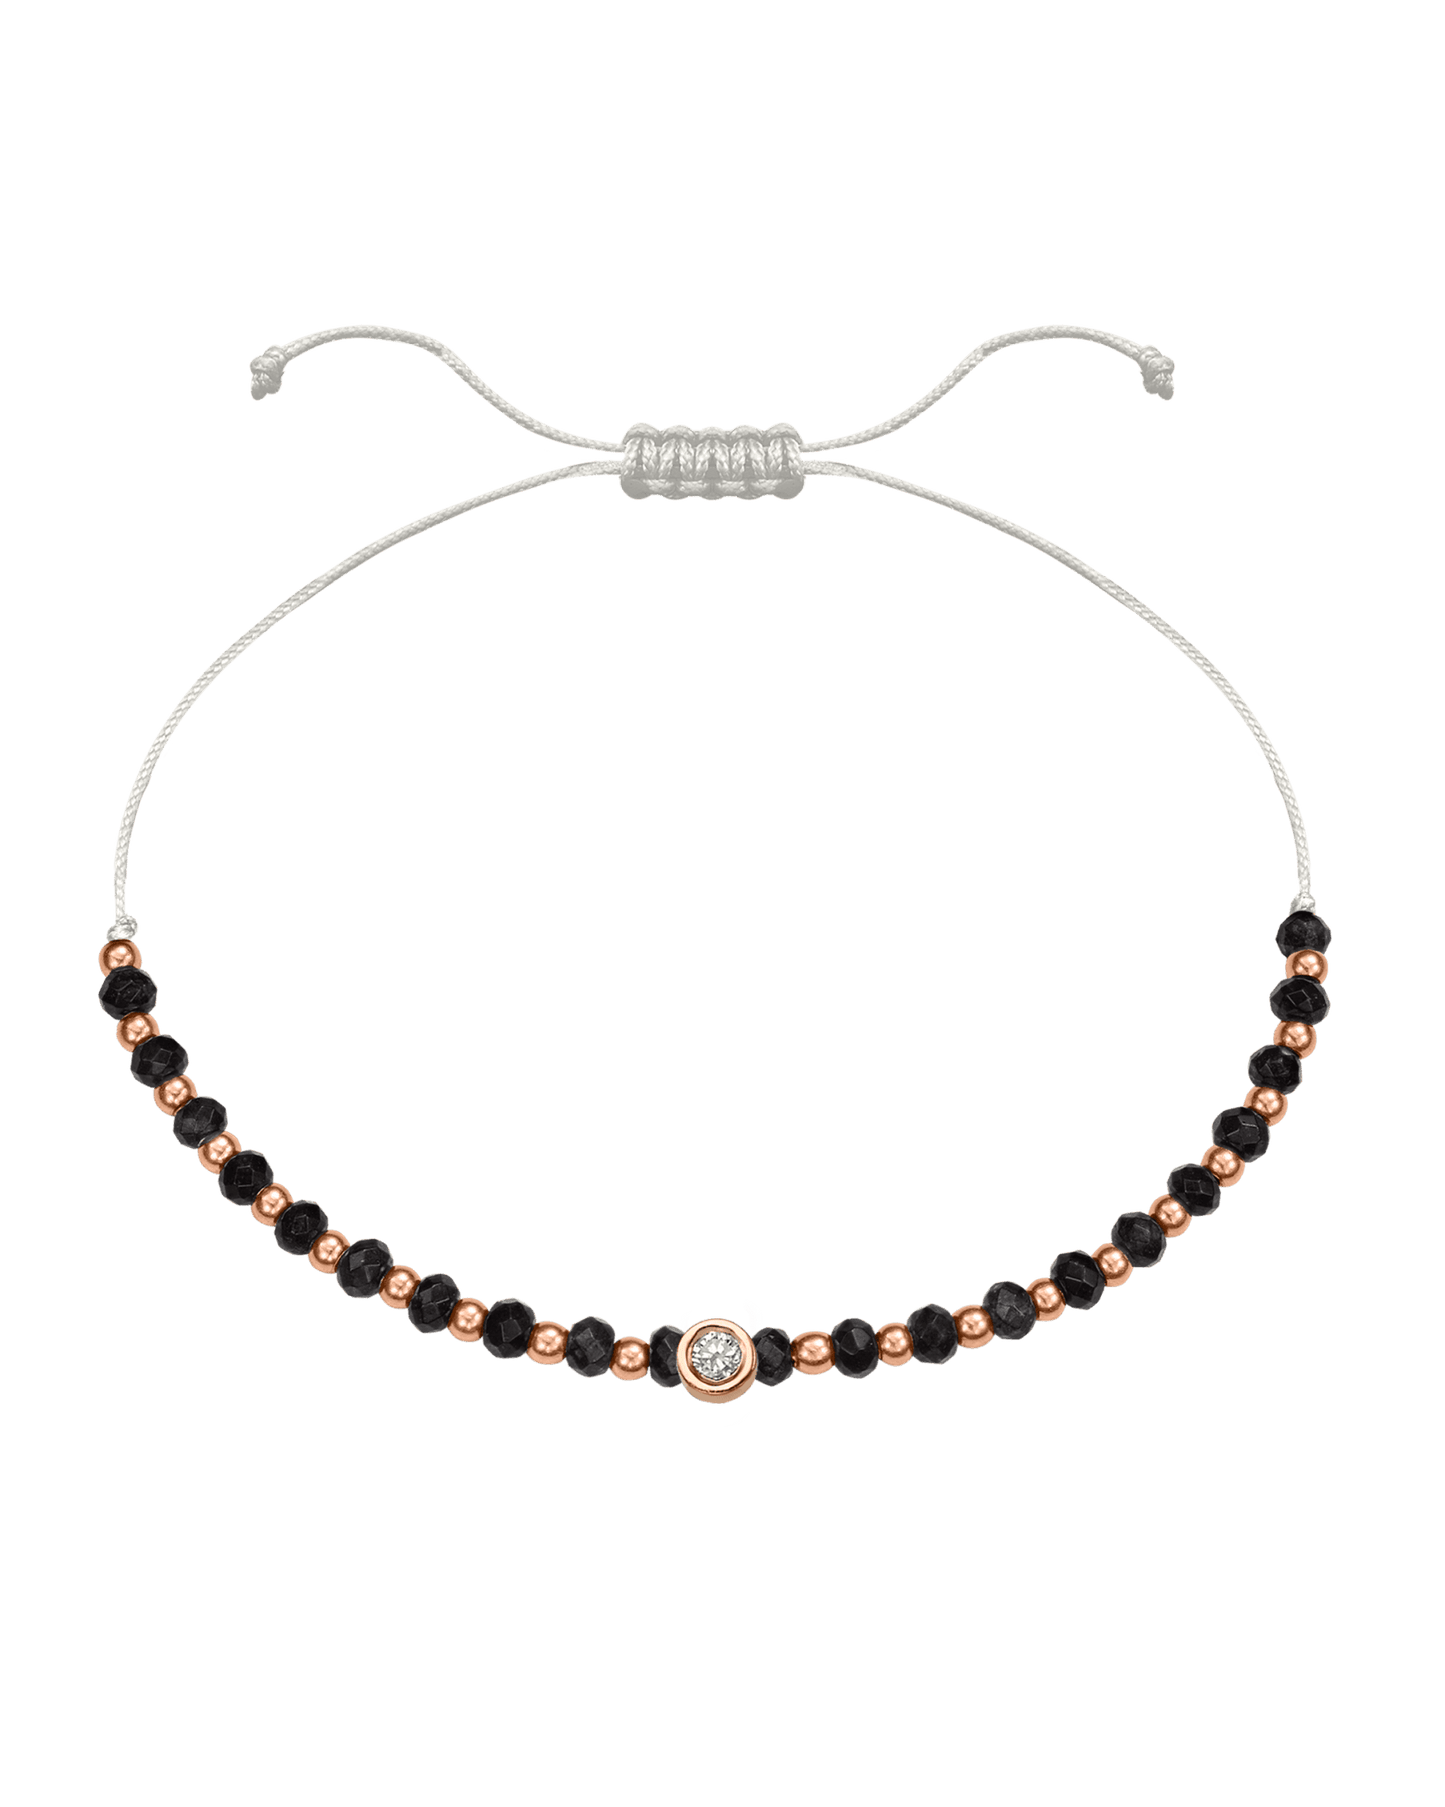 Black Onyx Gemstone String of Love Bracelet for Protection - 14K Rose Gold Bracelets 14K Solid Gold Pearl Medium: 0.04ct 